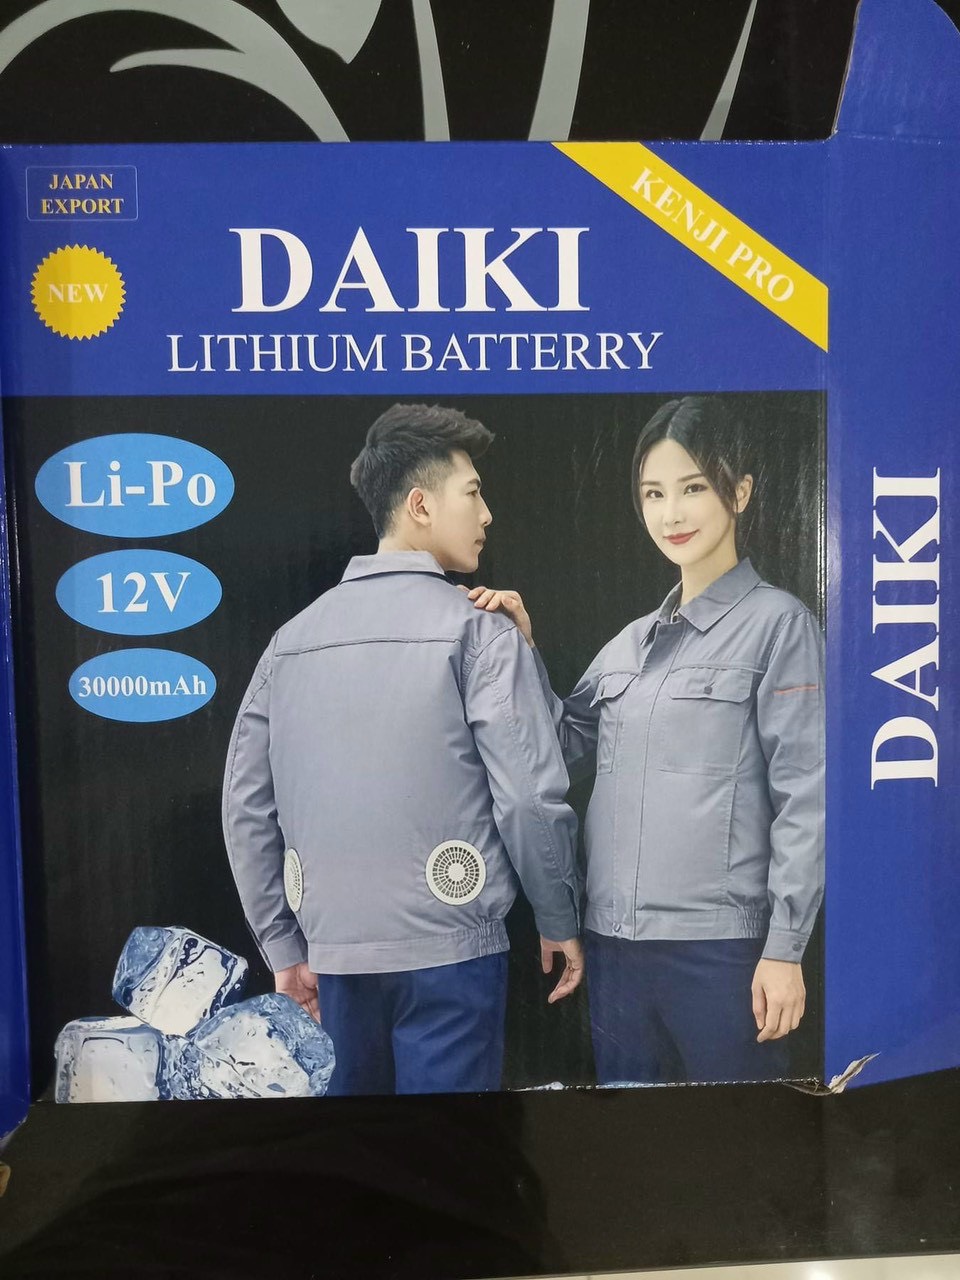 Quạt điều hòa gắn áo DaiKi - Tạo cảm giác thoáng mát ngày hè khi phải ra đướng trong thời tiết nóng bức